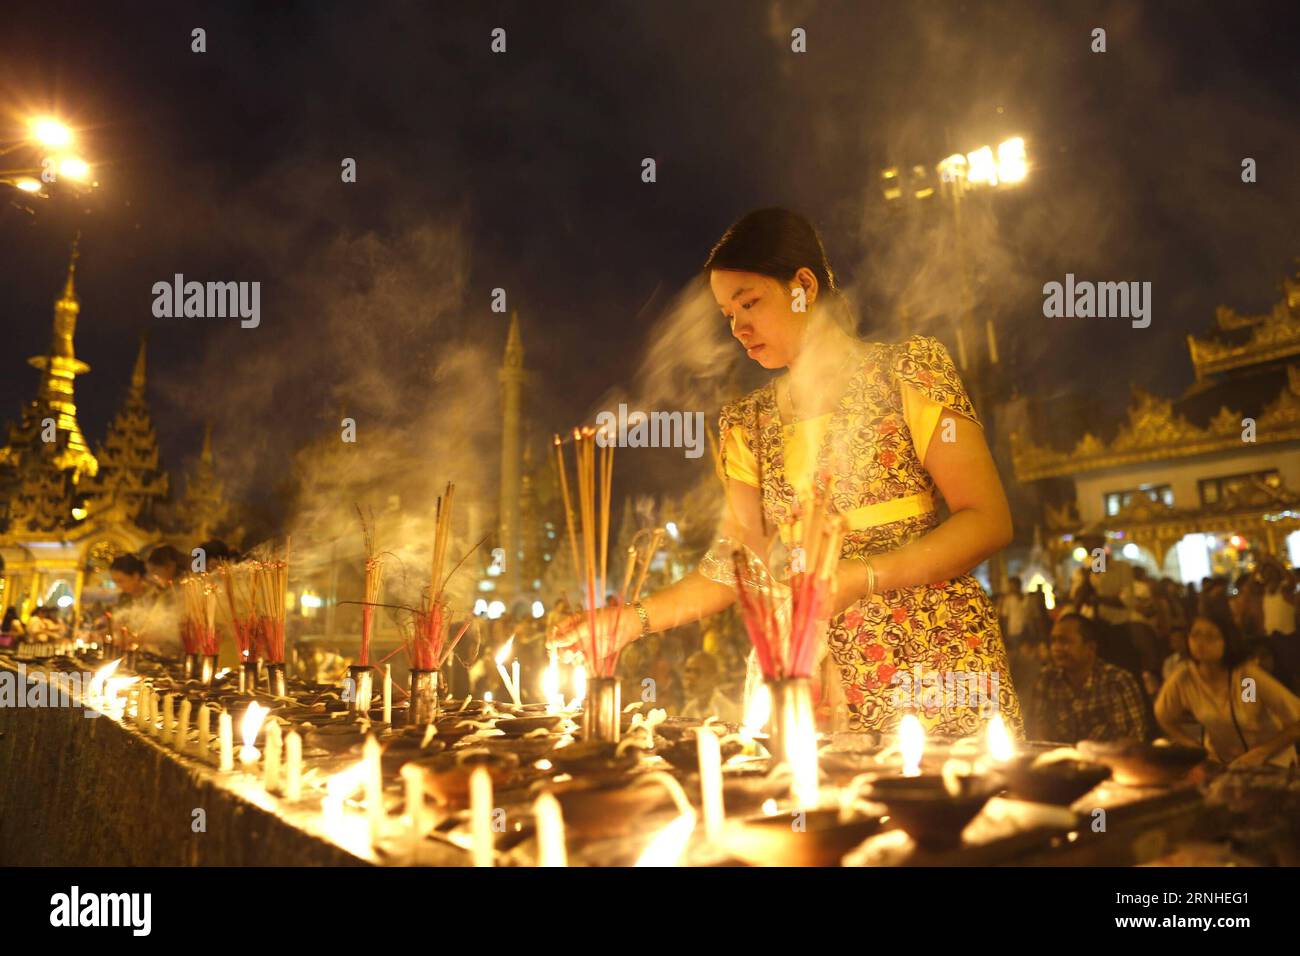 Eine Frau zündet Kerzen auf Myanmars traditionellem Tazaungdaing-Festival in der Shwedagon-Pagode in Yangon, Myanmar, 13. November 2016 an. Das Tazaungdaing Festival, auch bekannt als das Festival der Lichter, das im achten Monat des traditionellen myanmarischen Kalenders auf den Vollmondtag fällt, wird als Nationalfeiertag in Myanmar gefeiert und markiert das Ende der Regenzeit. ) (zw) MYANMAR-YANGON-TAZAUNGDAING FESTIVAL UxAung PUBLICATIONxNOTxINxCHN A Woman Lights Candles ON Myanmar S Traditional Tazaungdaing Festival AT the Shwedagon Pagoda in Yangon Myanmar 13. November 2016 das Tazaungdaing Festival Stockfoto